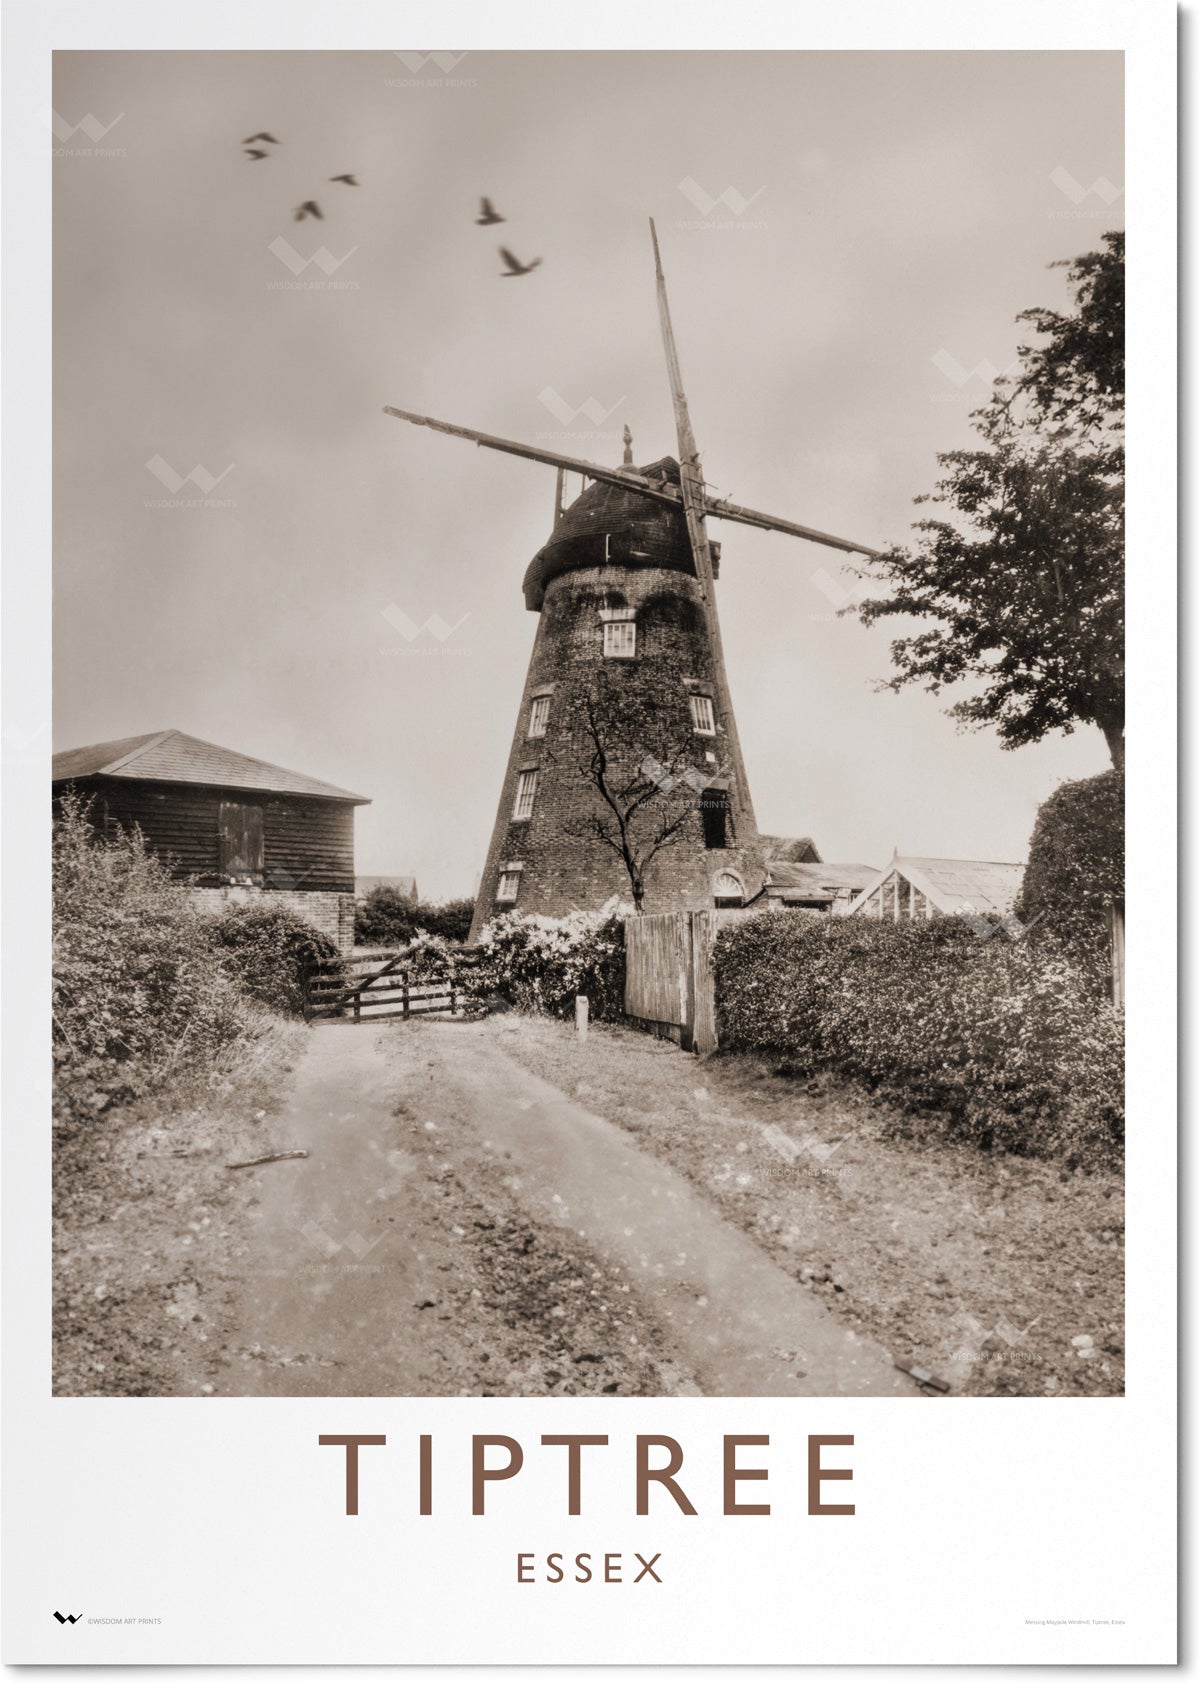 Tiptree Windmill, Essex